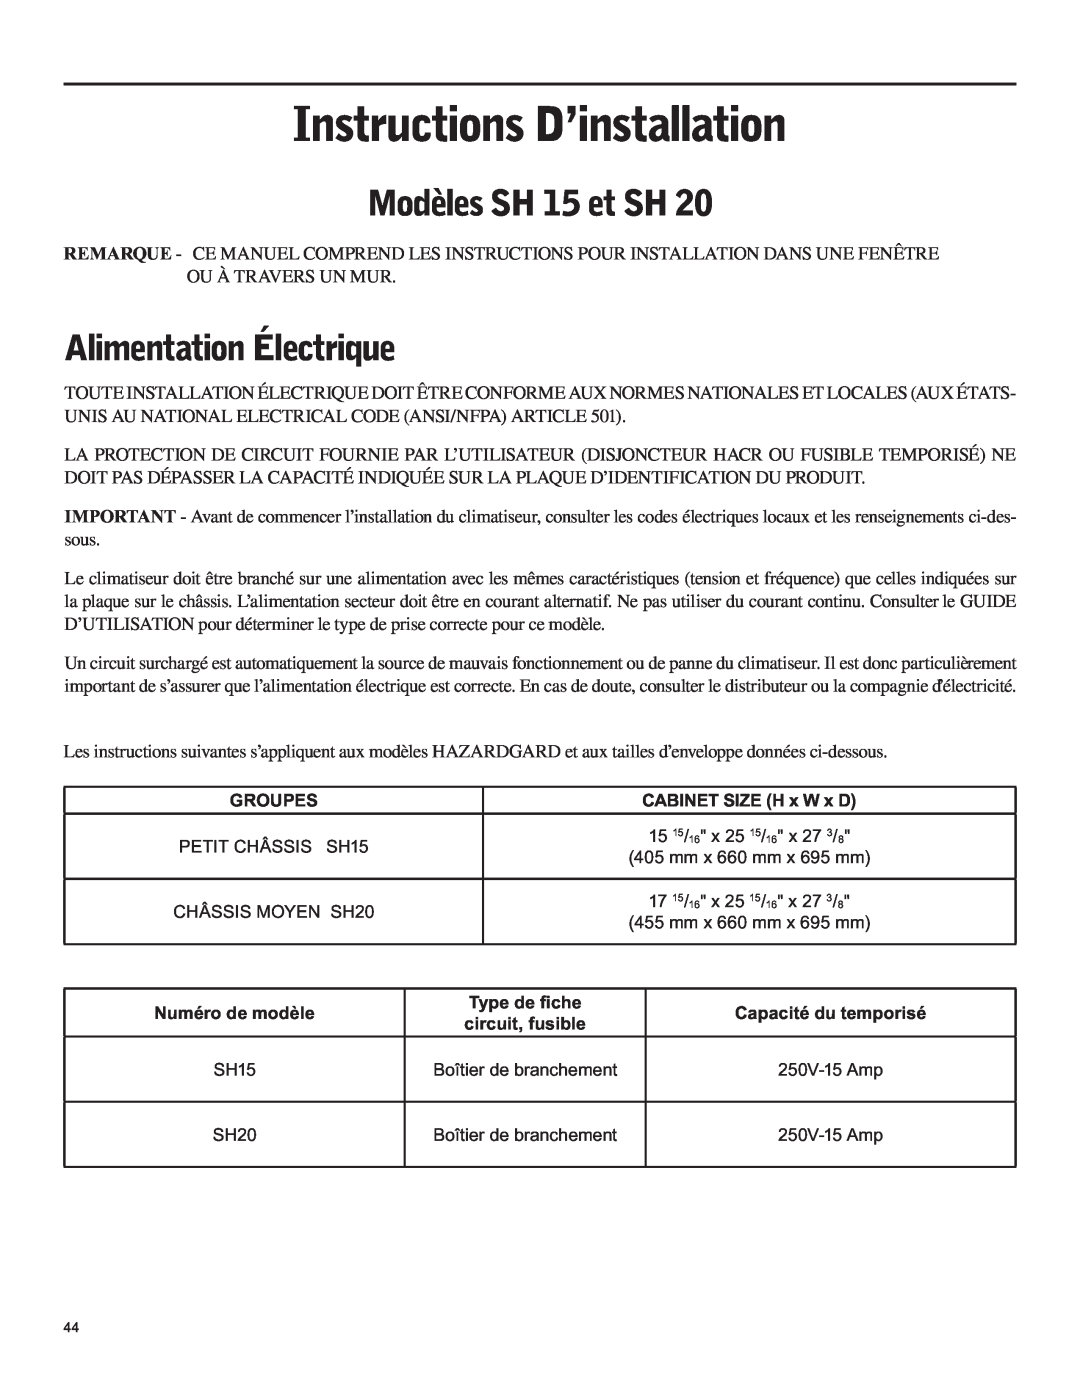 Friedrich SH15 operation manual Instructions D’installation, Modèles SH 15 et SH, Alimentation Électrique 